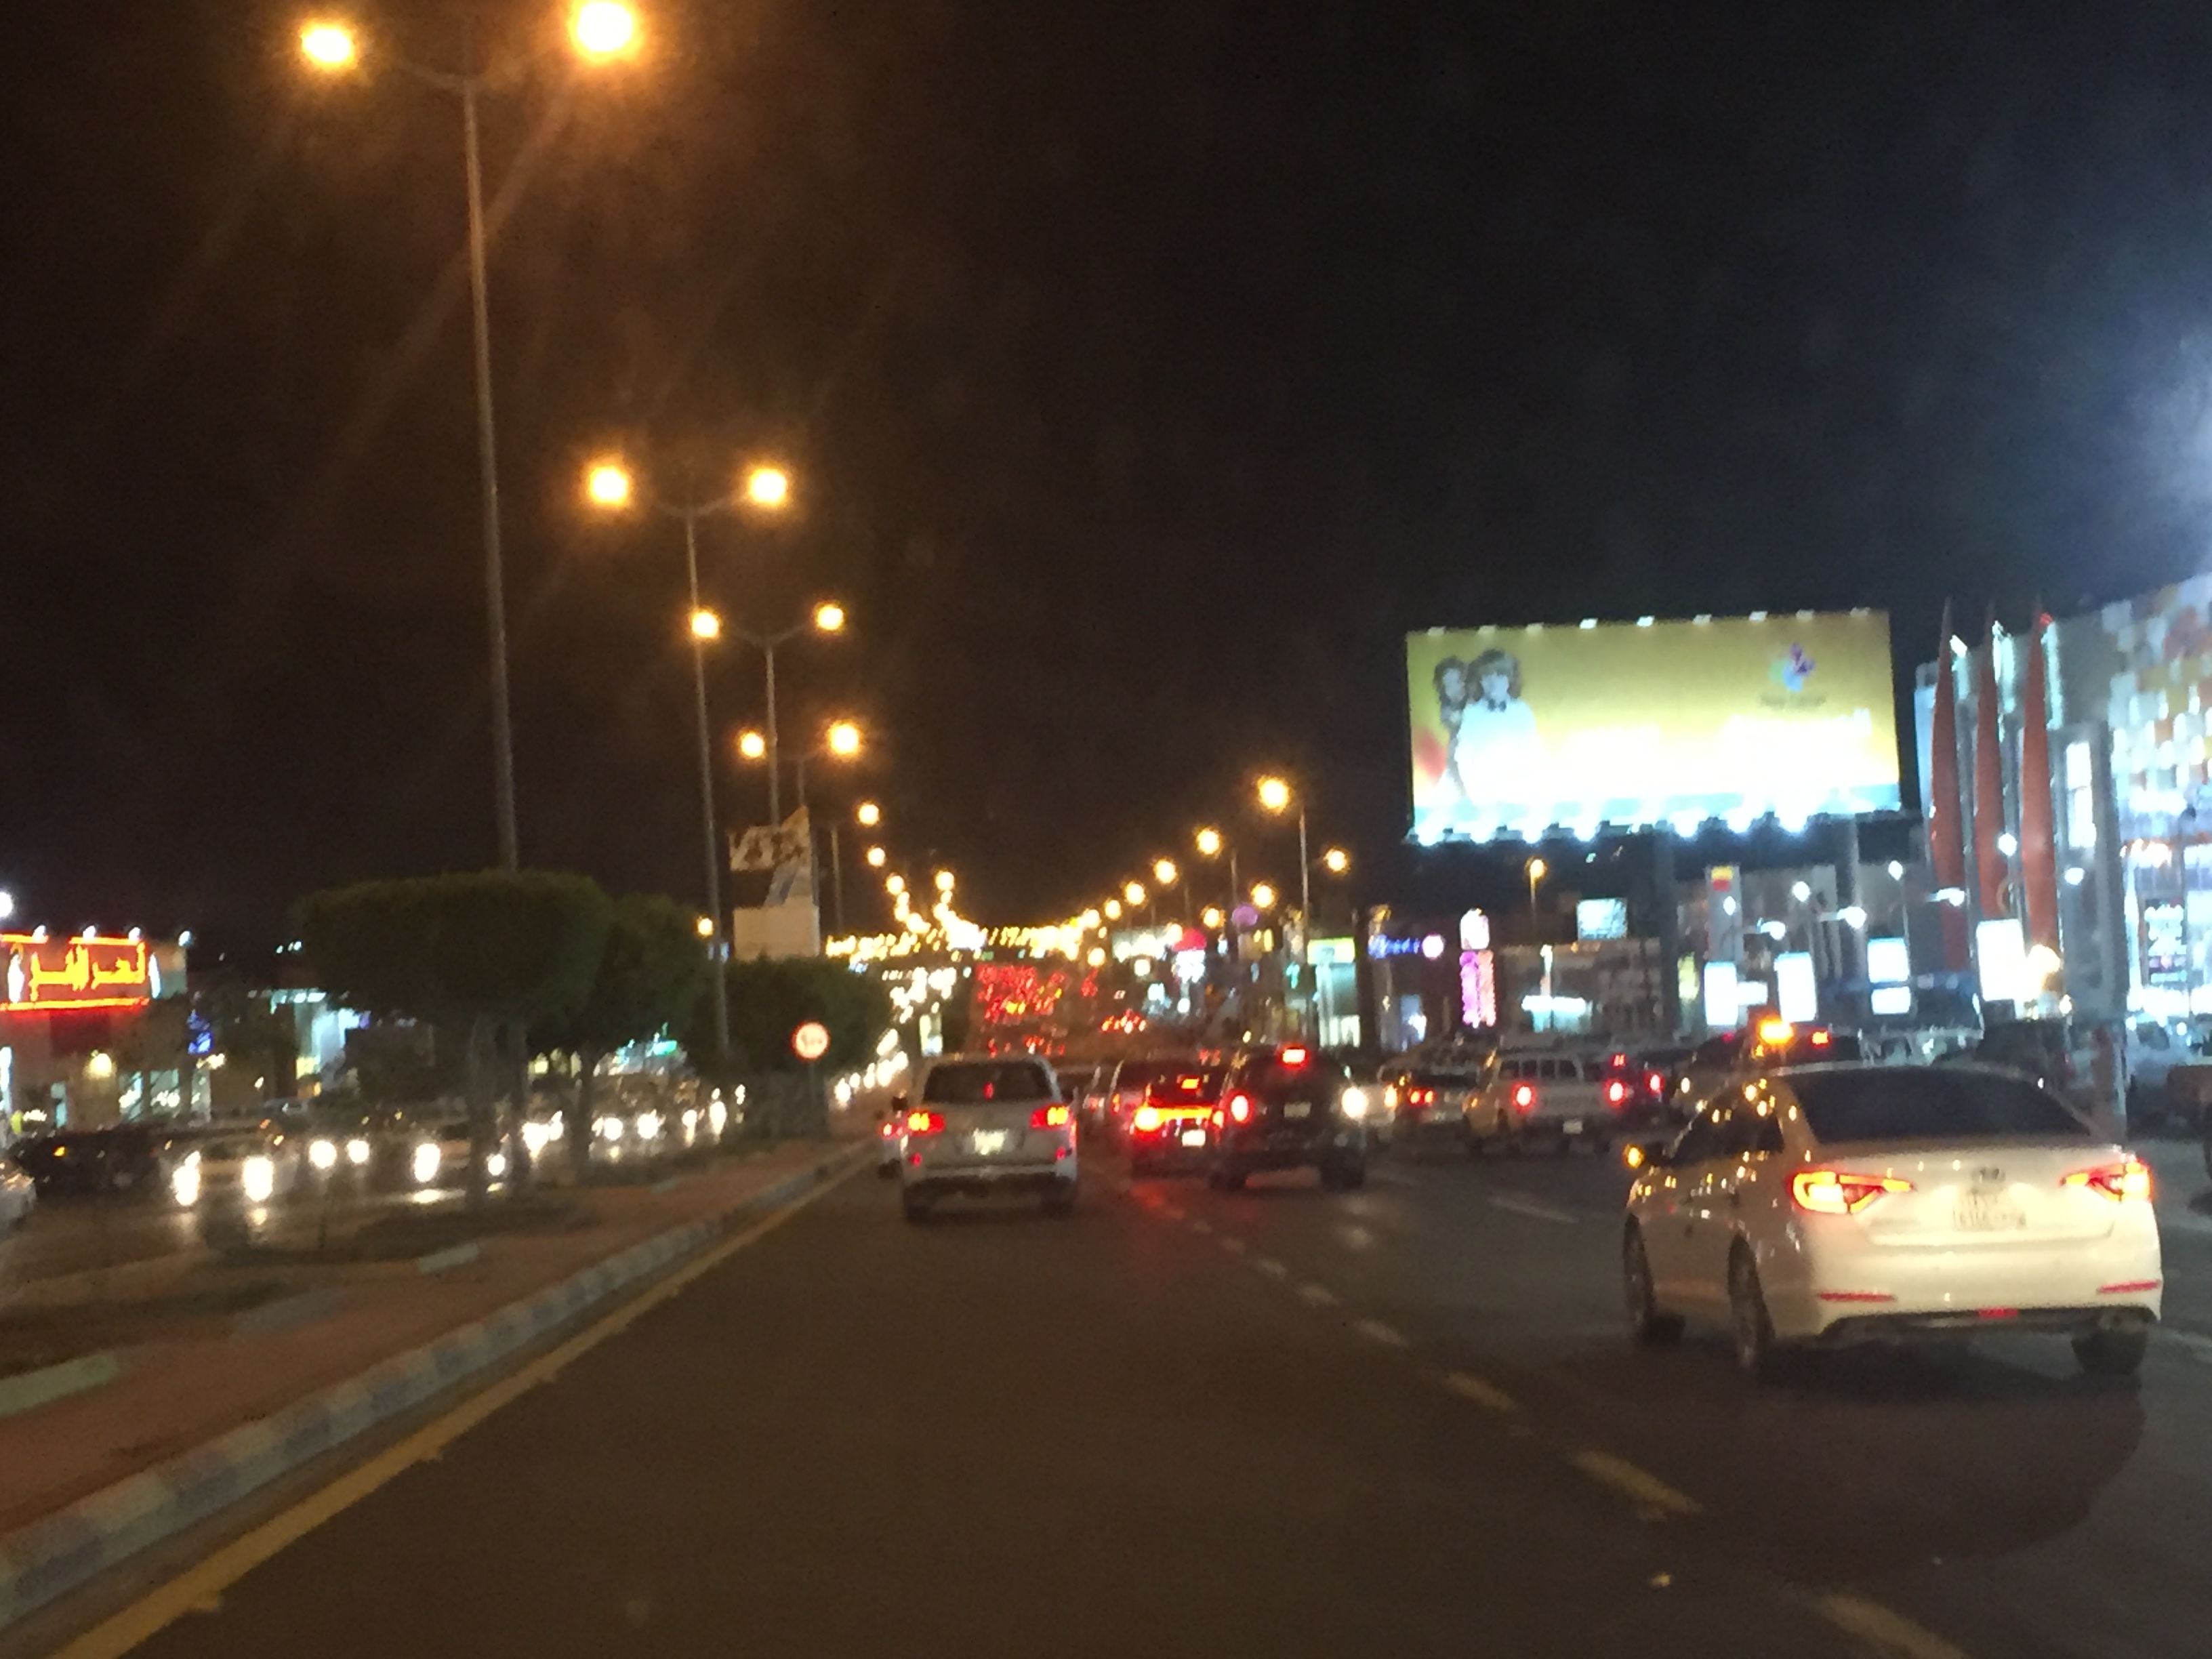 دورانات عشوائية على طريق الملك خالد بالخميس تشل المرور وتوقع الحوادث!